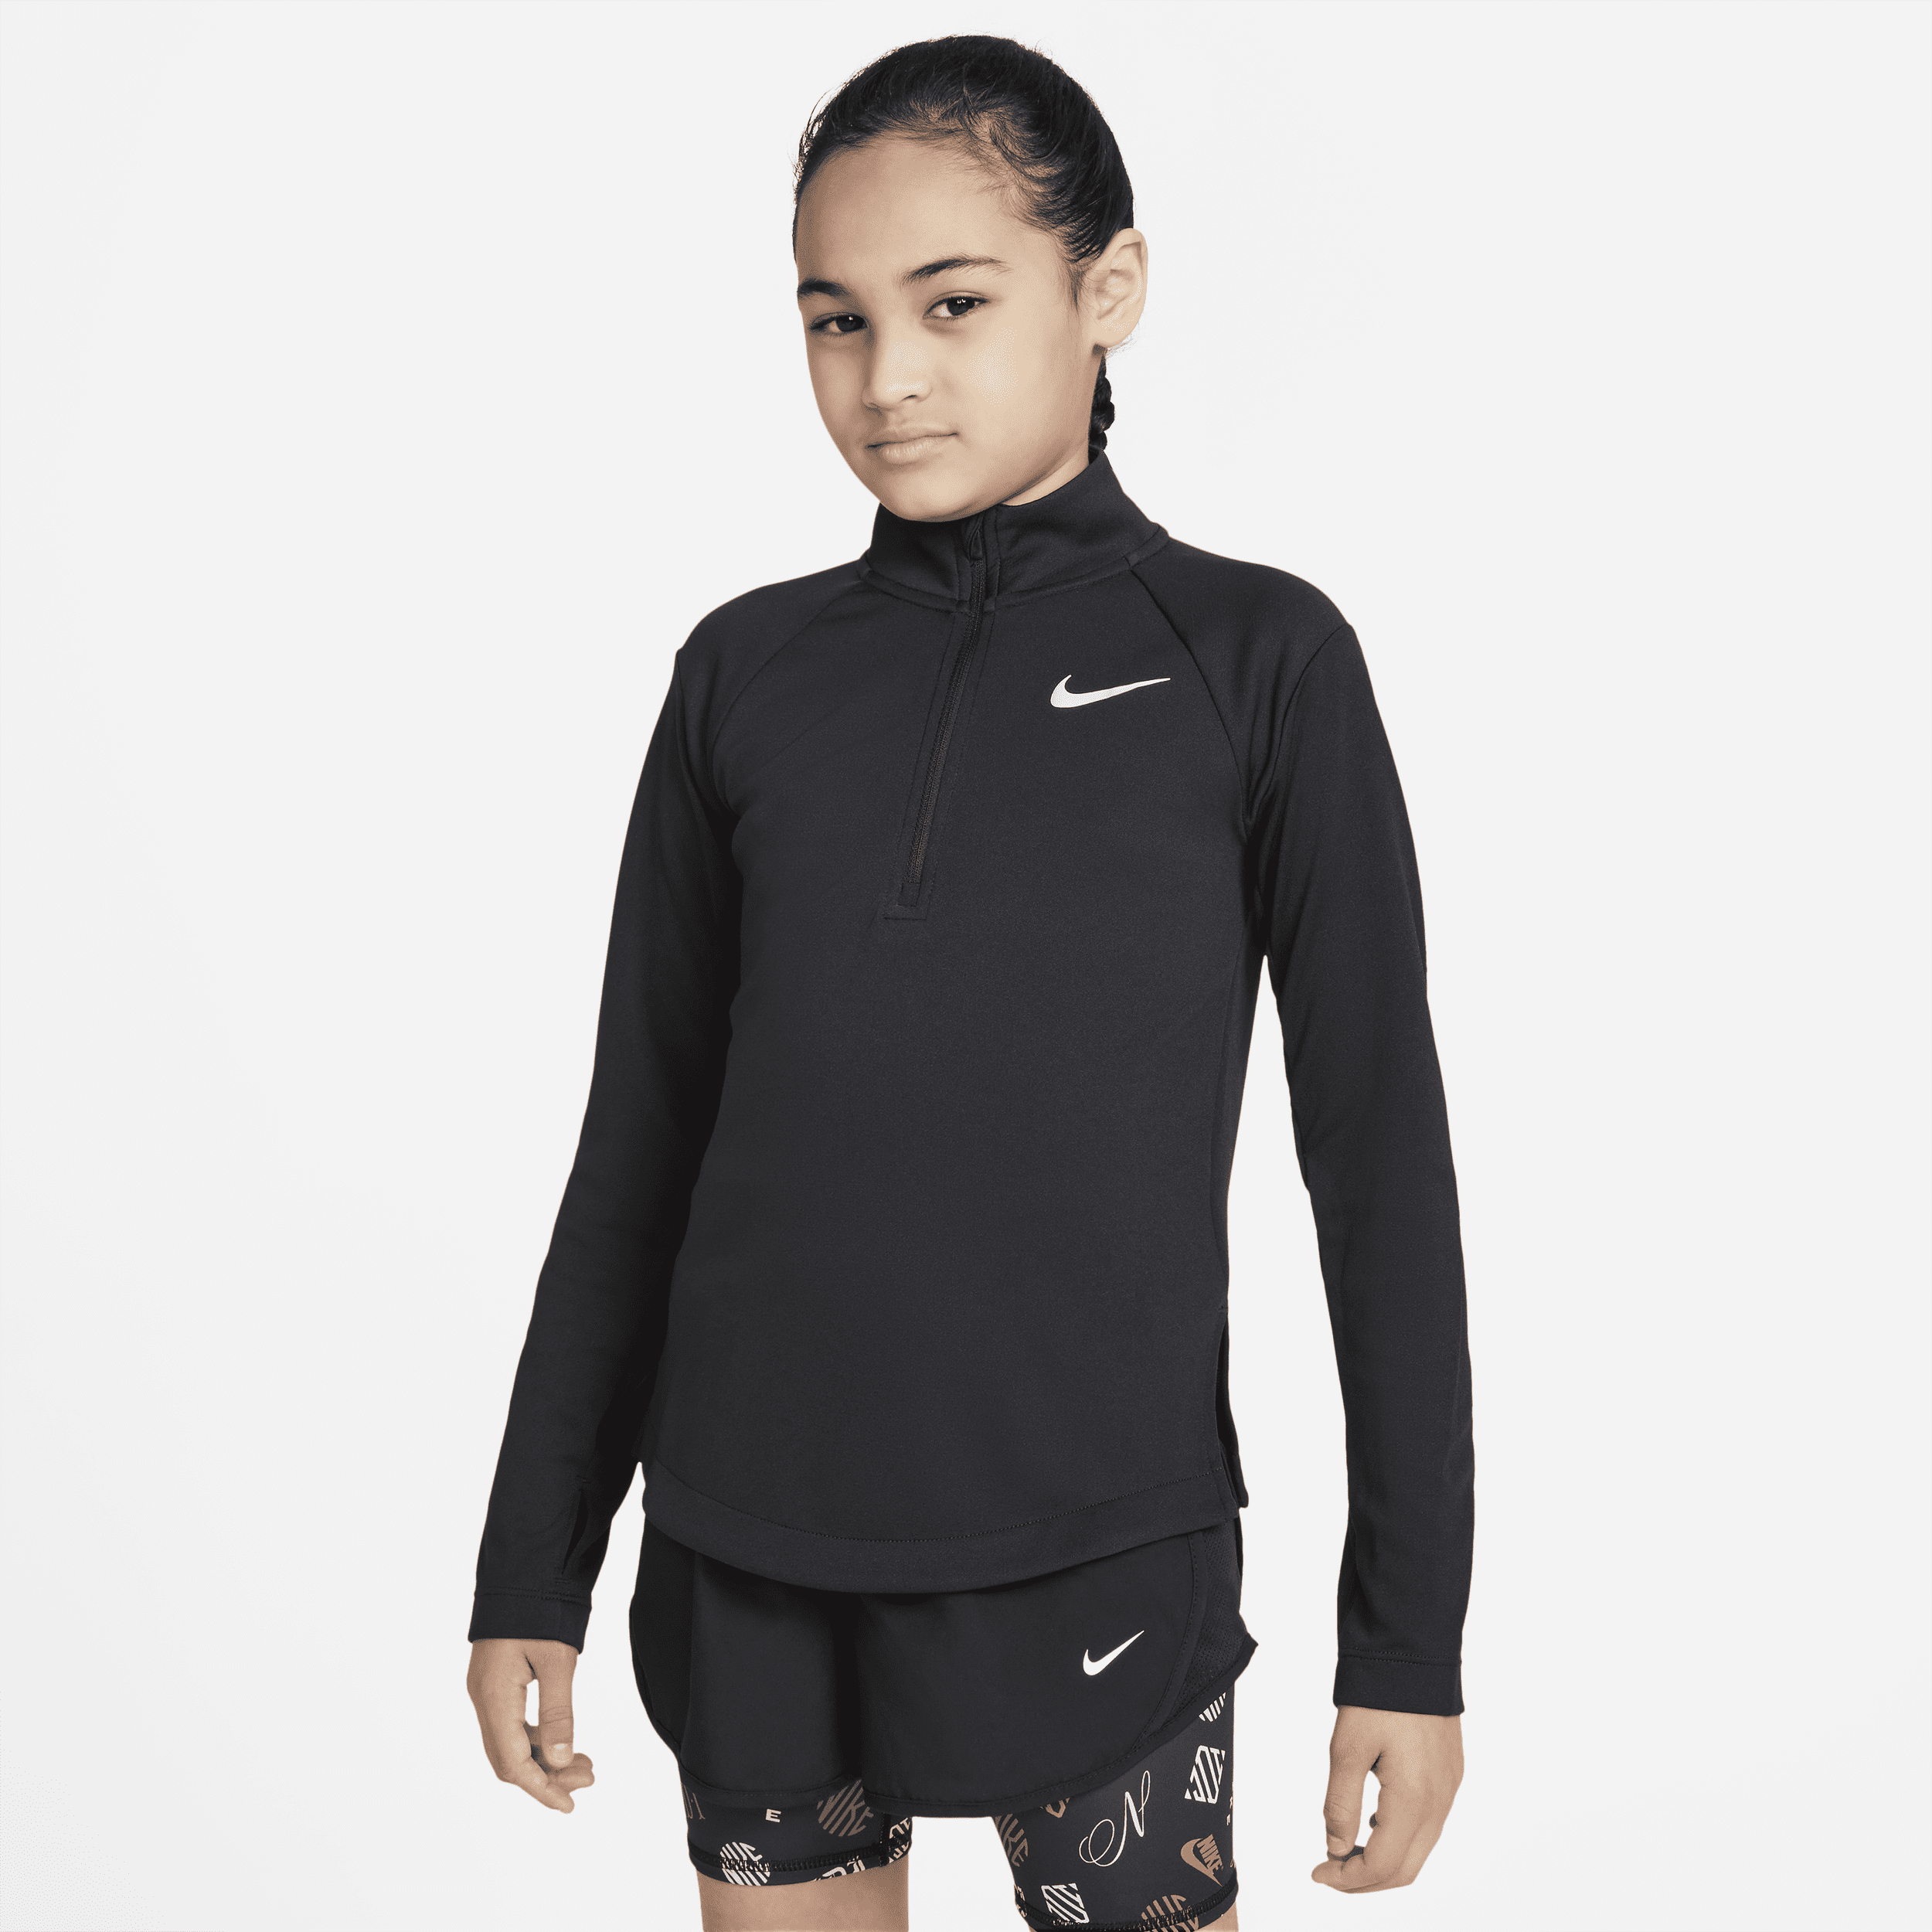 Nike Dri-FIT Hardlooptop met lange mouwen voor meisjes - Zwart